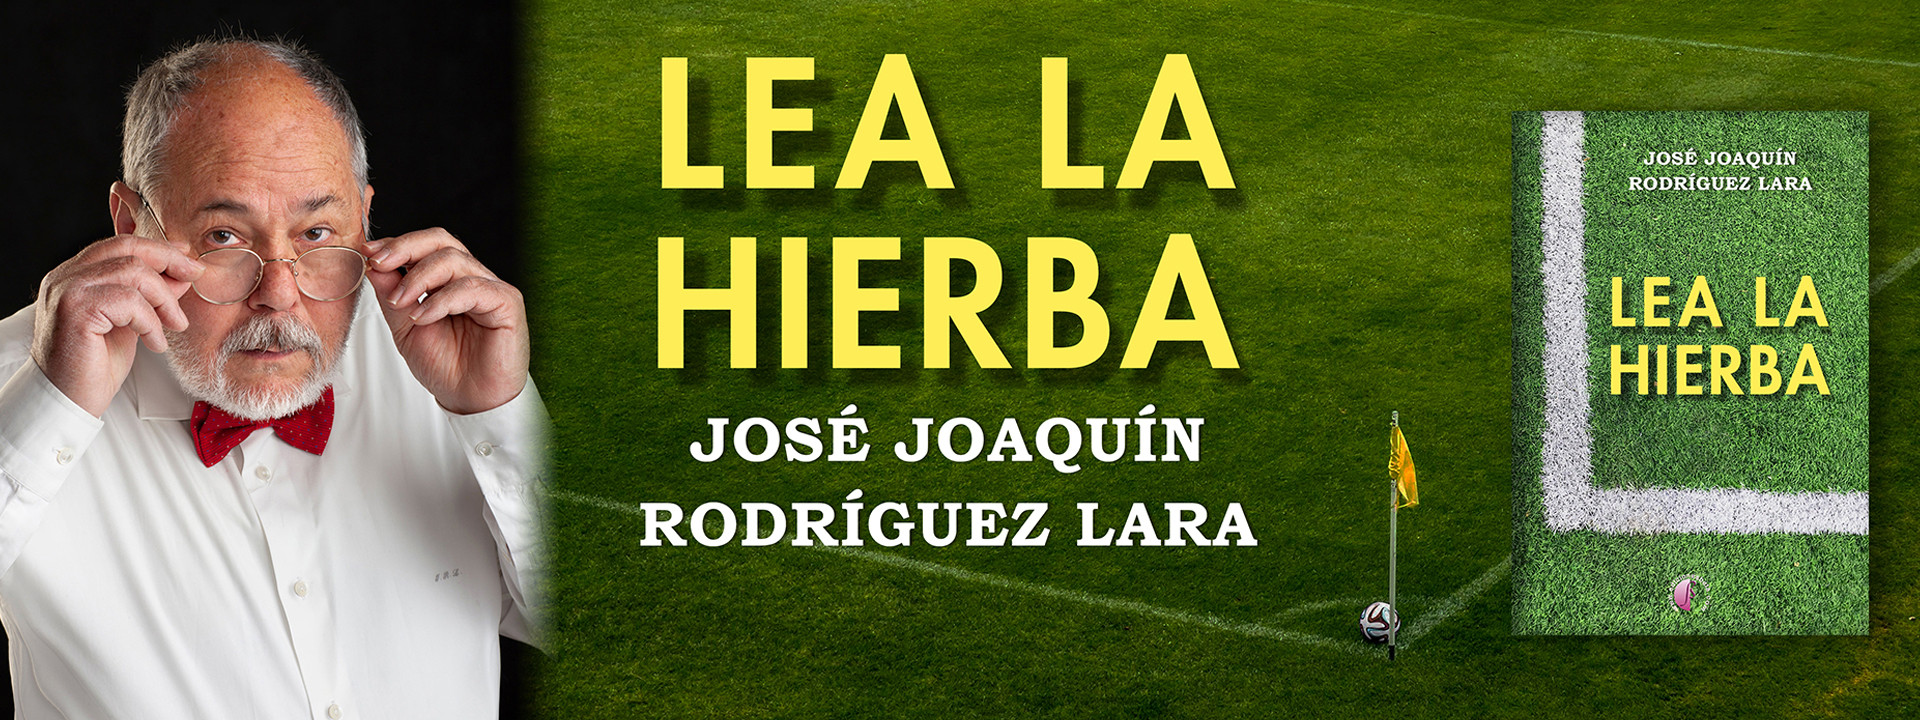 Lea la hierba, de José Joaquín Rodríguez Lara